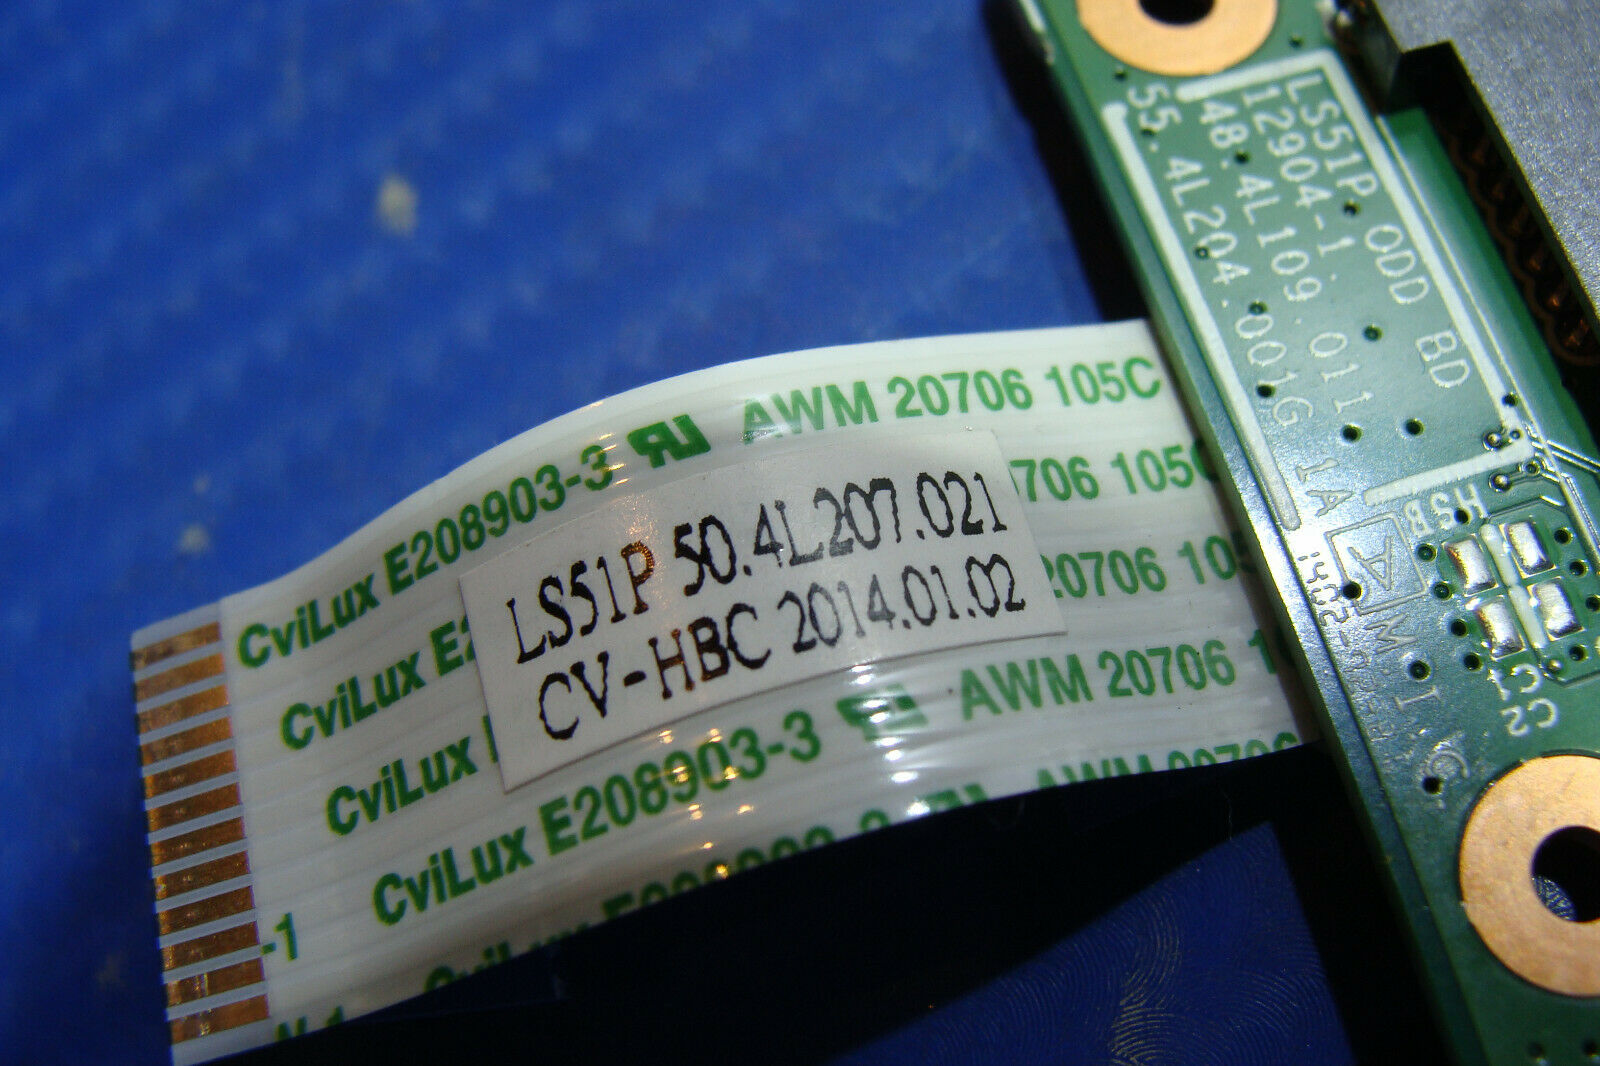 Lenovo IdeaPad S510p 20299 15.6